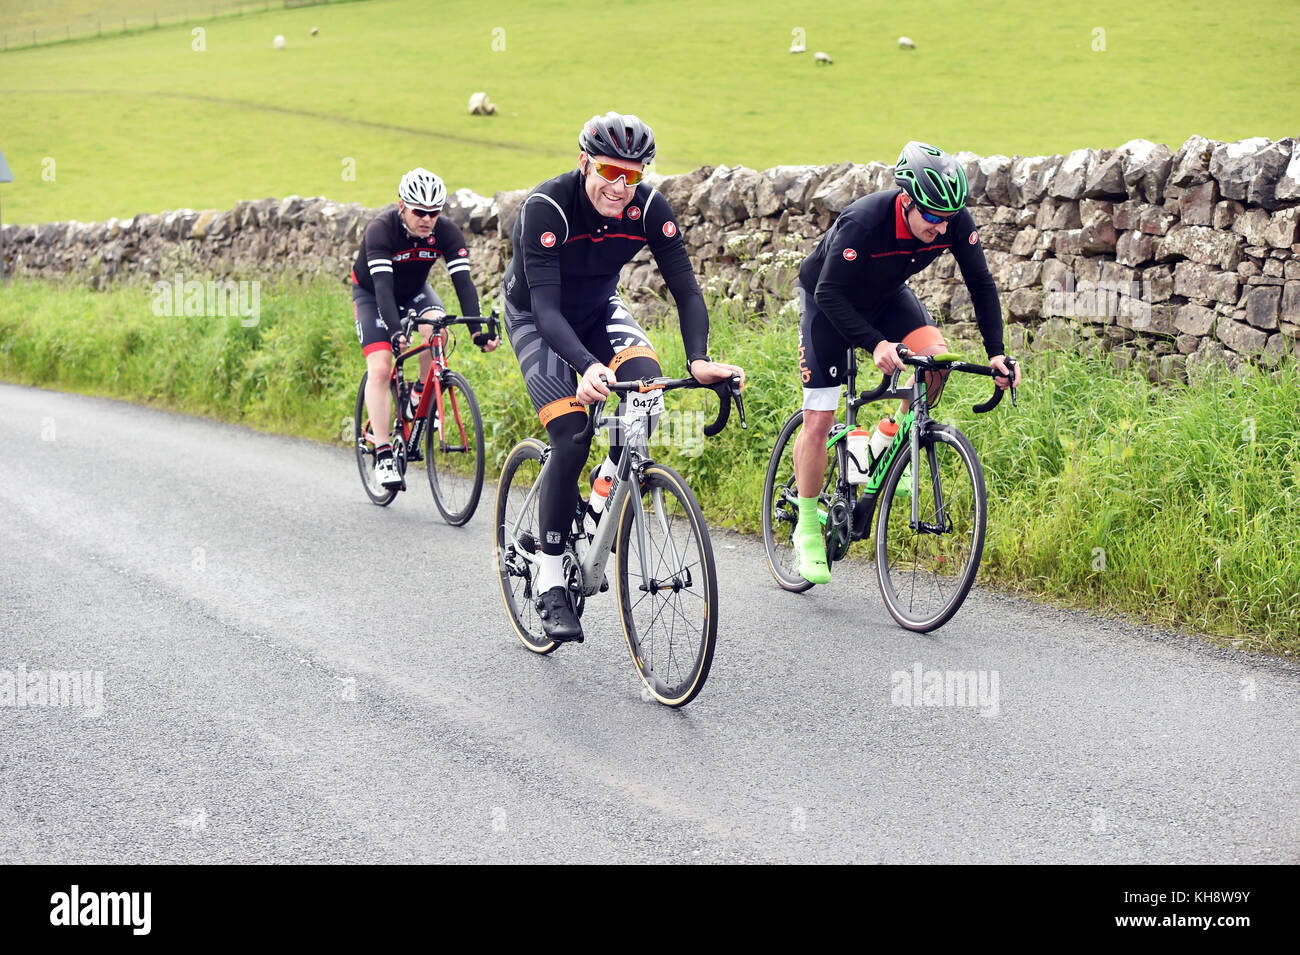 Les cyclistes à cheval sur un chemin de campagne dans le Yorkshire Dales, UK Banque D'Images